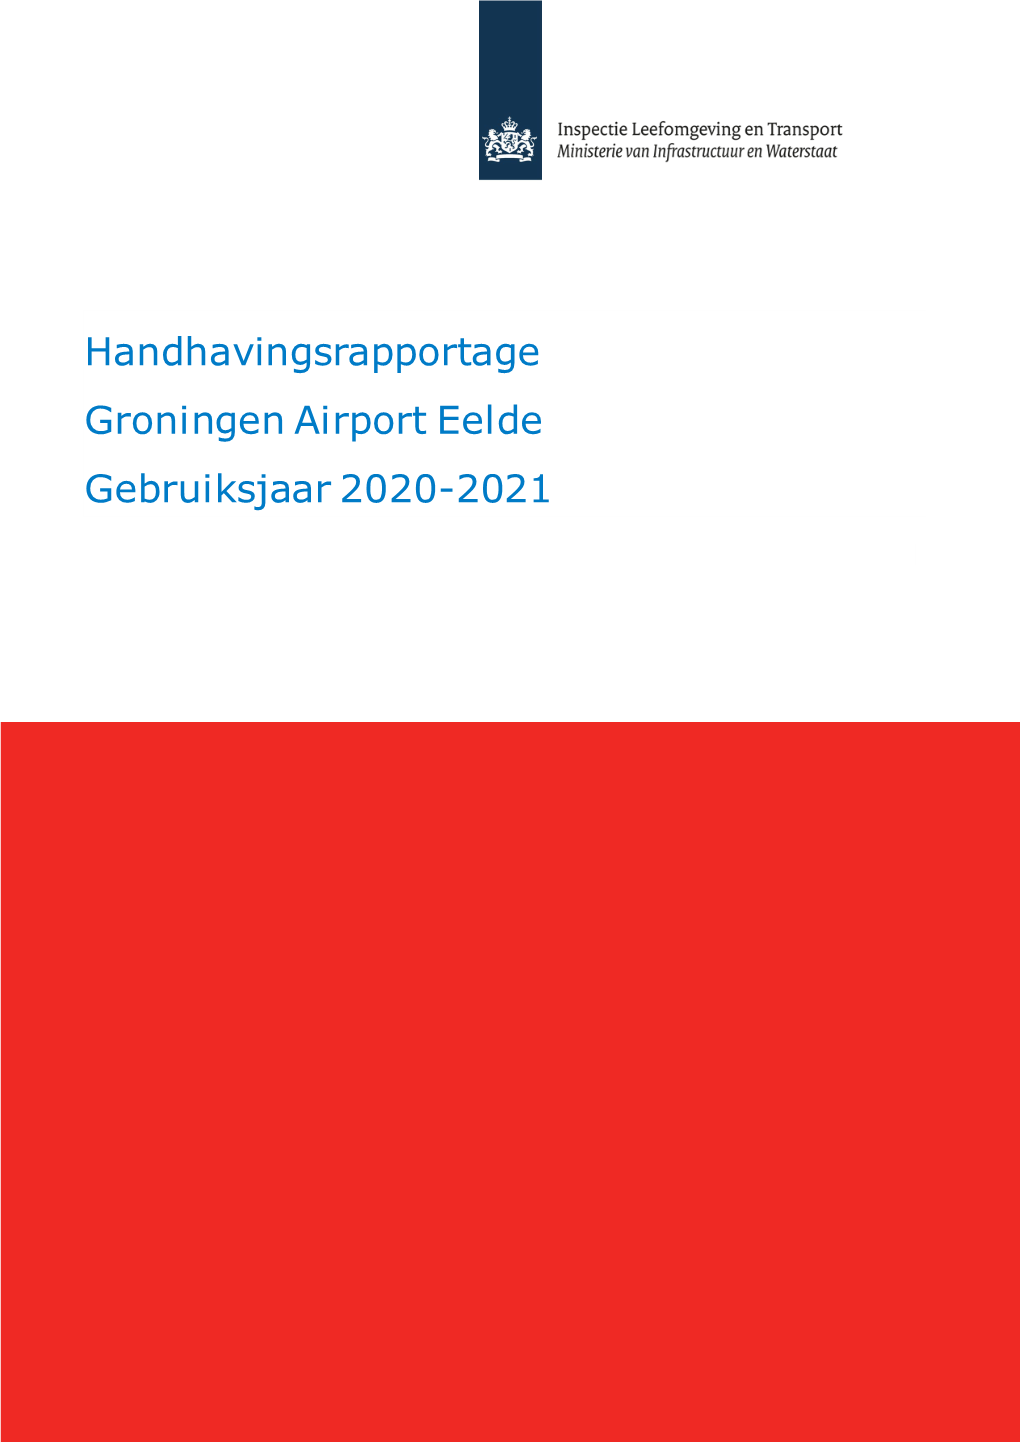 Handhavingsrapportage Groningen Airport Eelde Gebruiksjaar 2020-2021